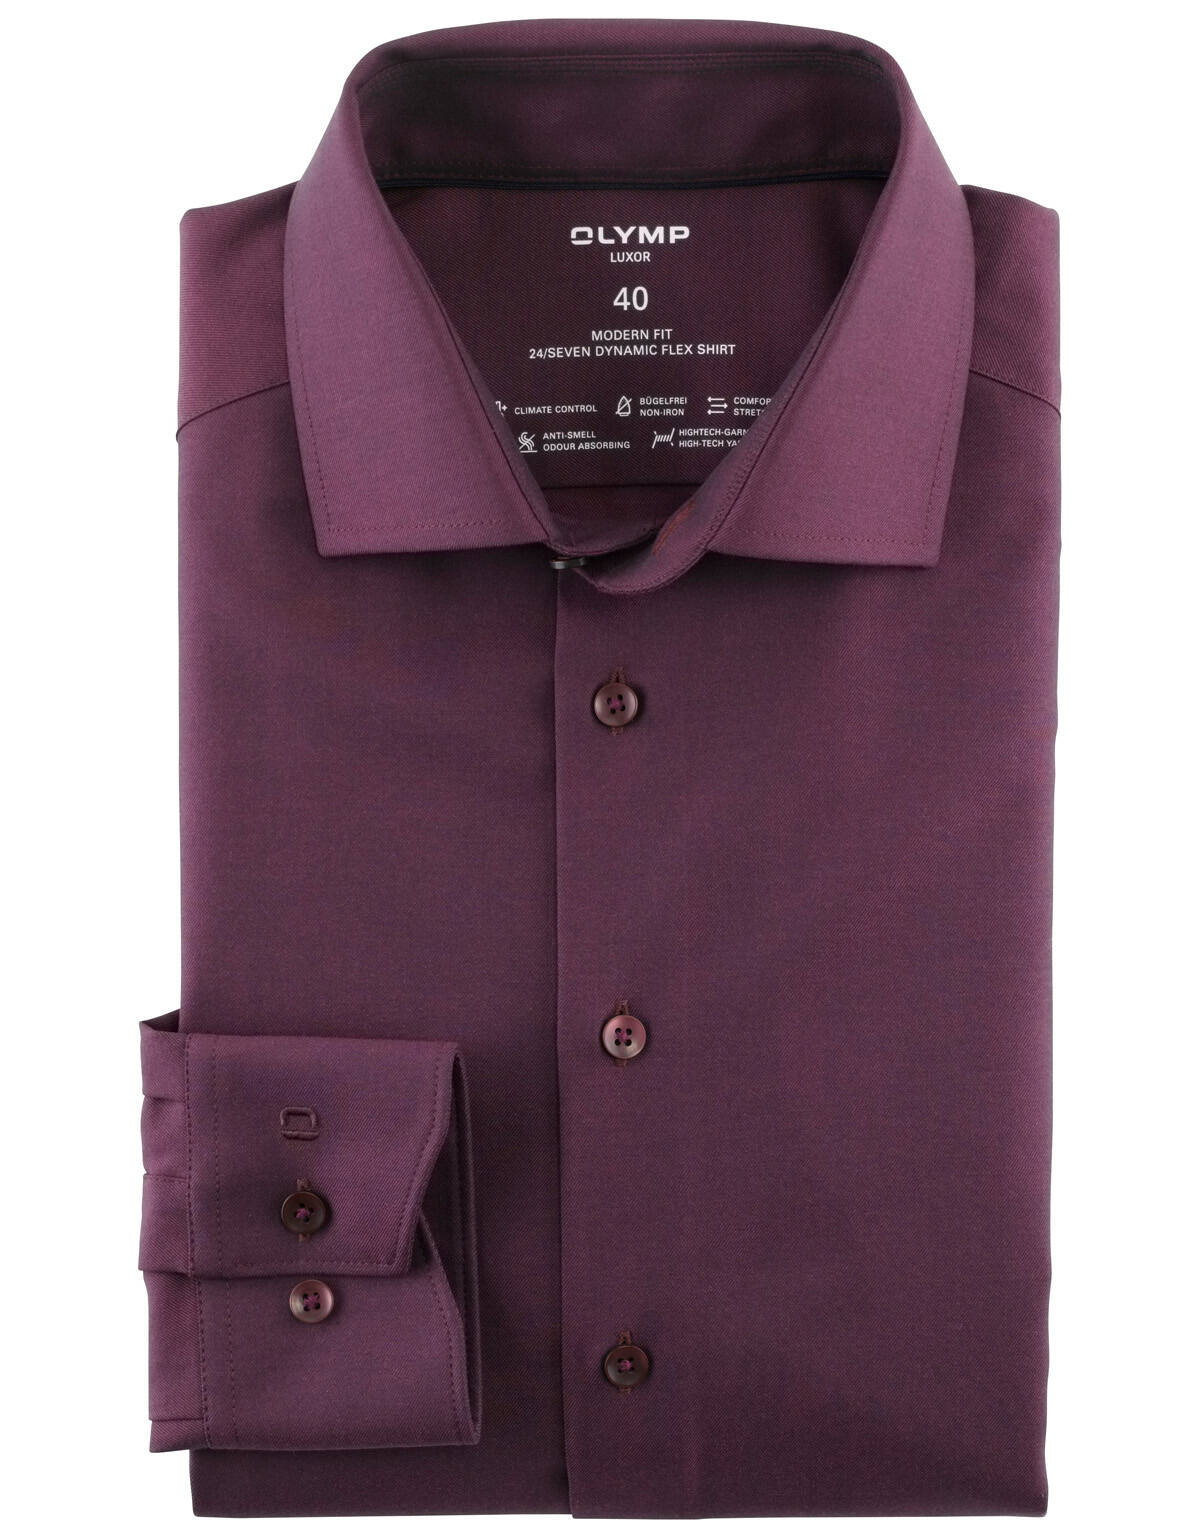 Рубашка мужская OLYMP Luxor 24/7, modern fit[Бордовый]